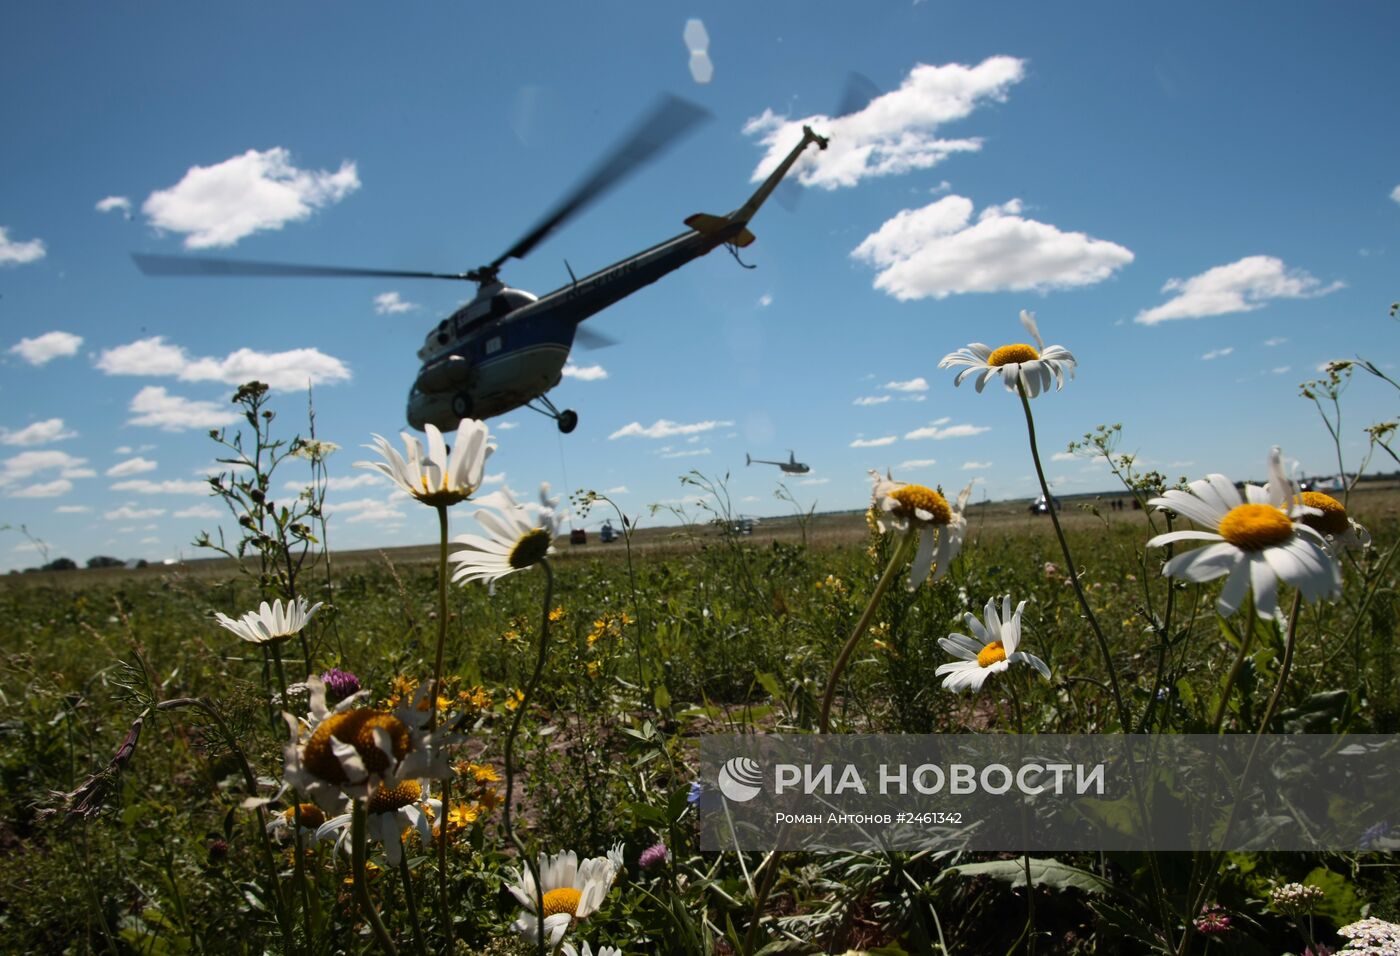 49-й открытый чемпионат России по вертолетному спорту